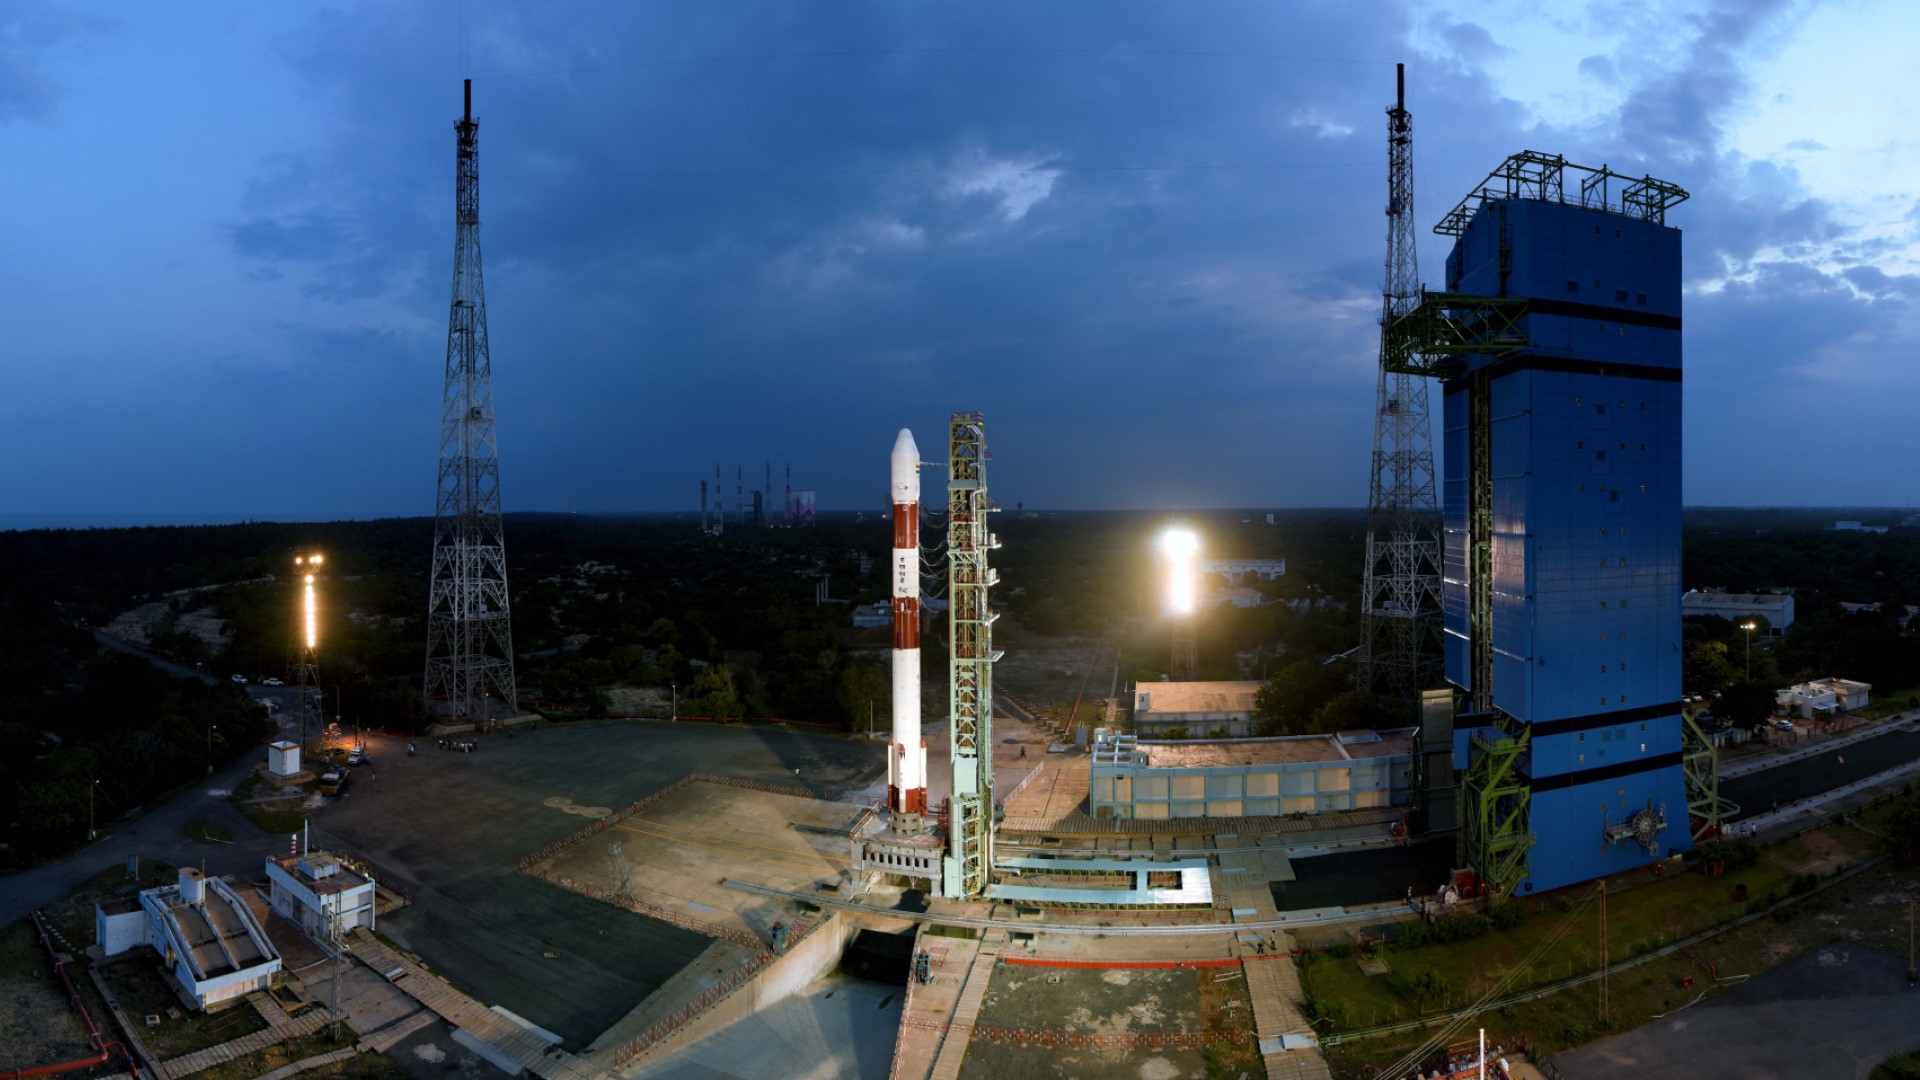 อินเดียจะทดสอบปล่อยจรวดขนส่งดาวเทียมขนาดเล็กครั้งแรกในภารกิจ SSLV Demo 1